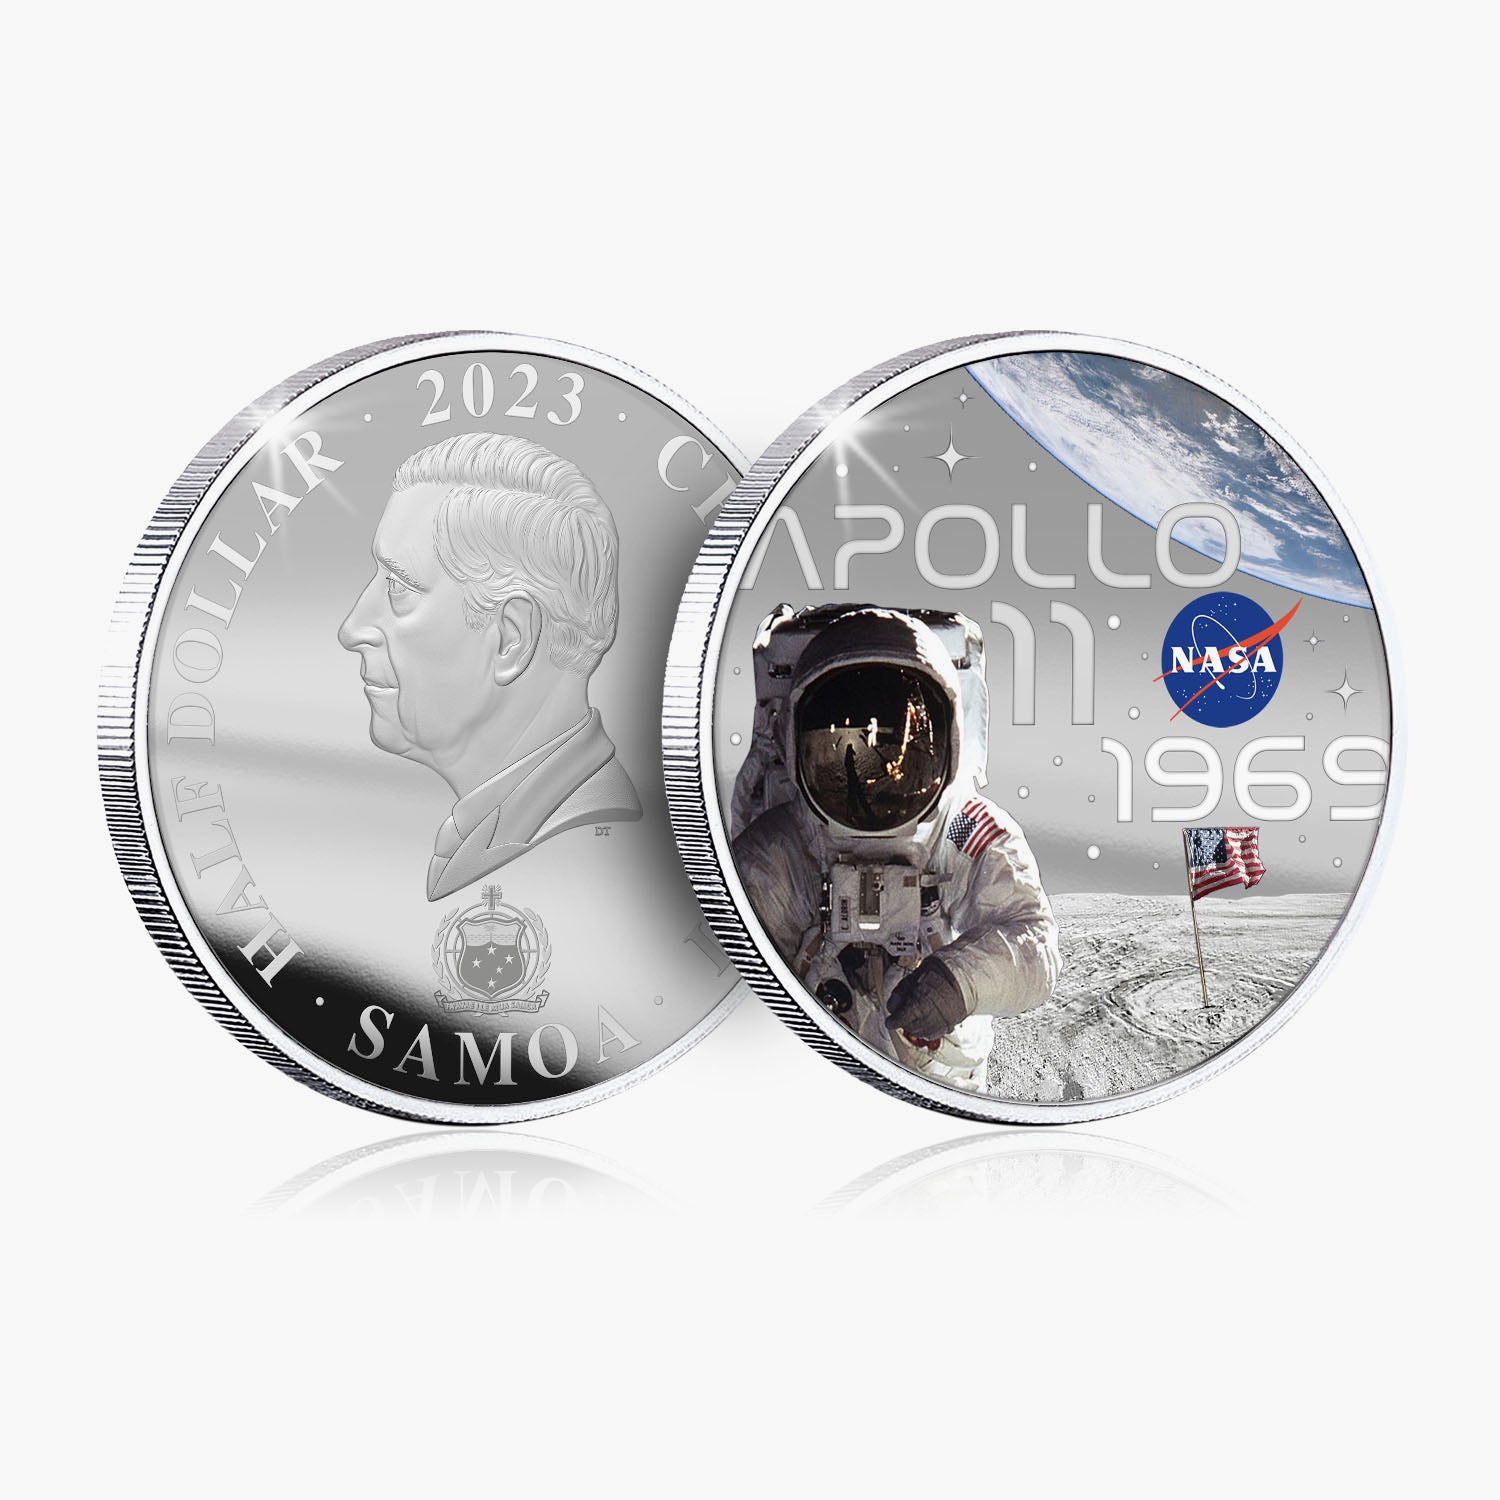 NASA 2023 Apollo 11 50mm Silver-Plated Coin